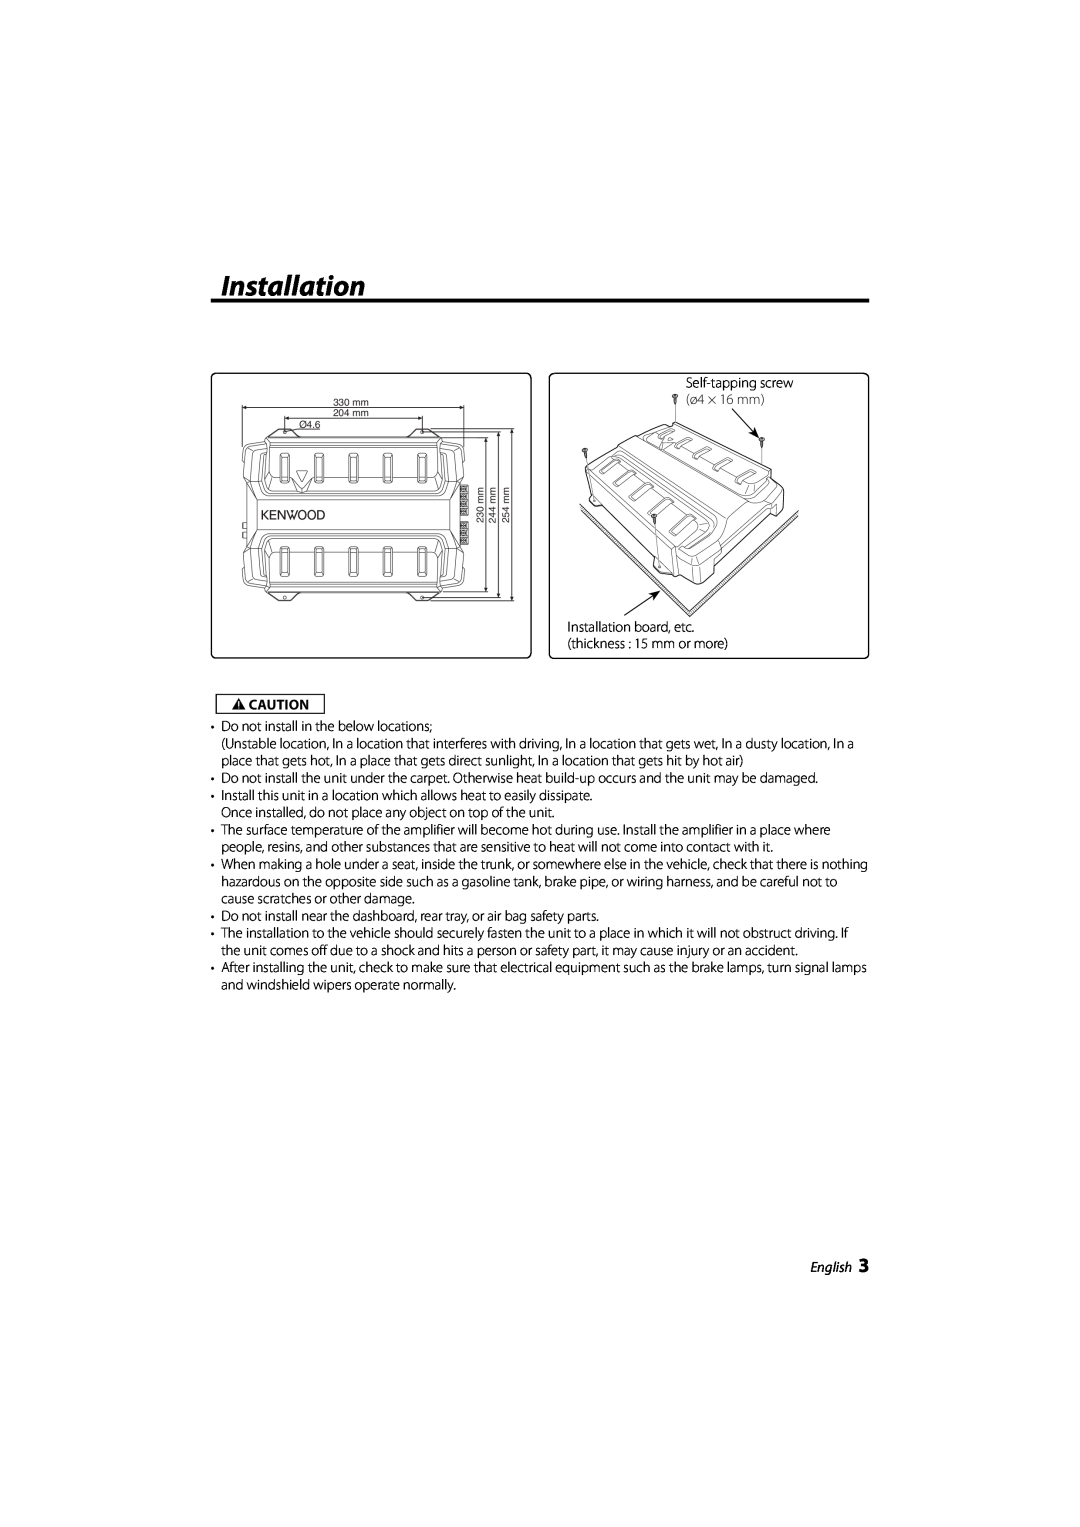 Kenwood KAC-6203 instruction manual Installation, English, 2CAUTION 